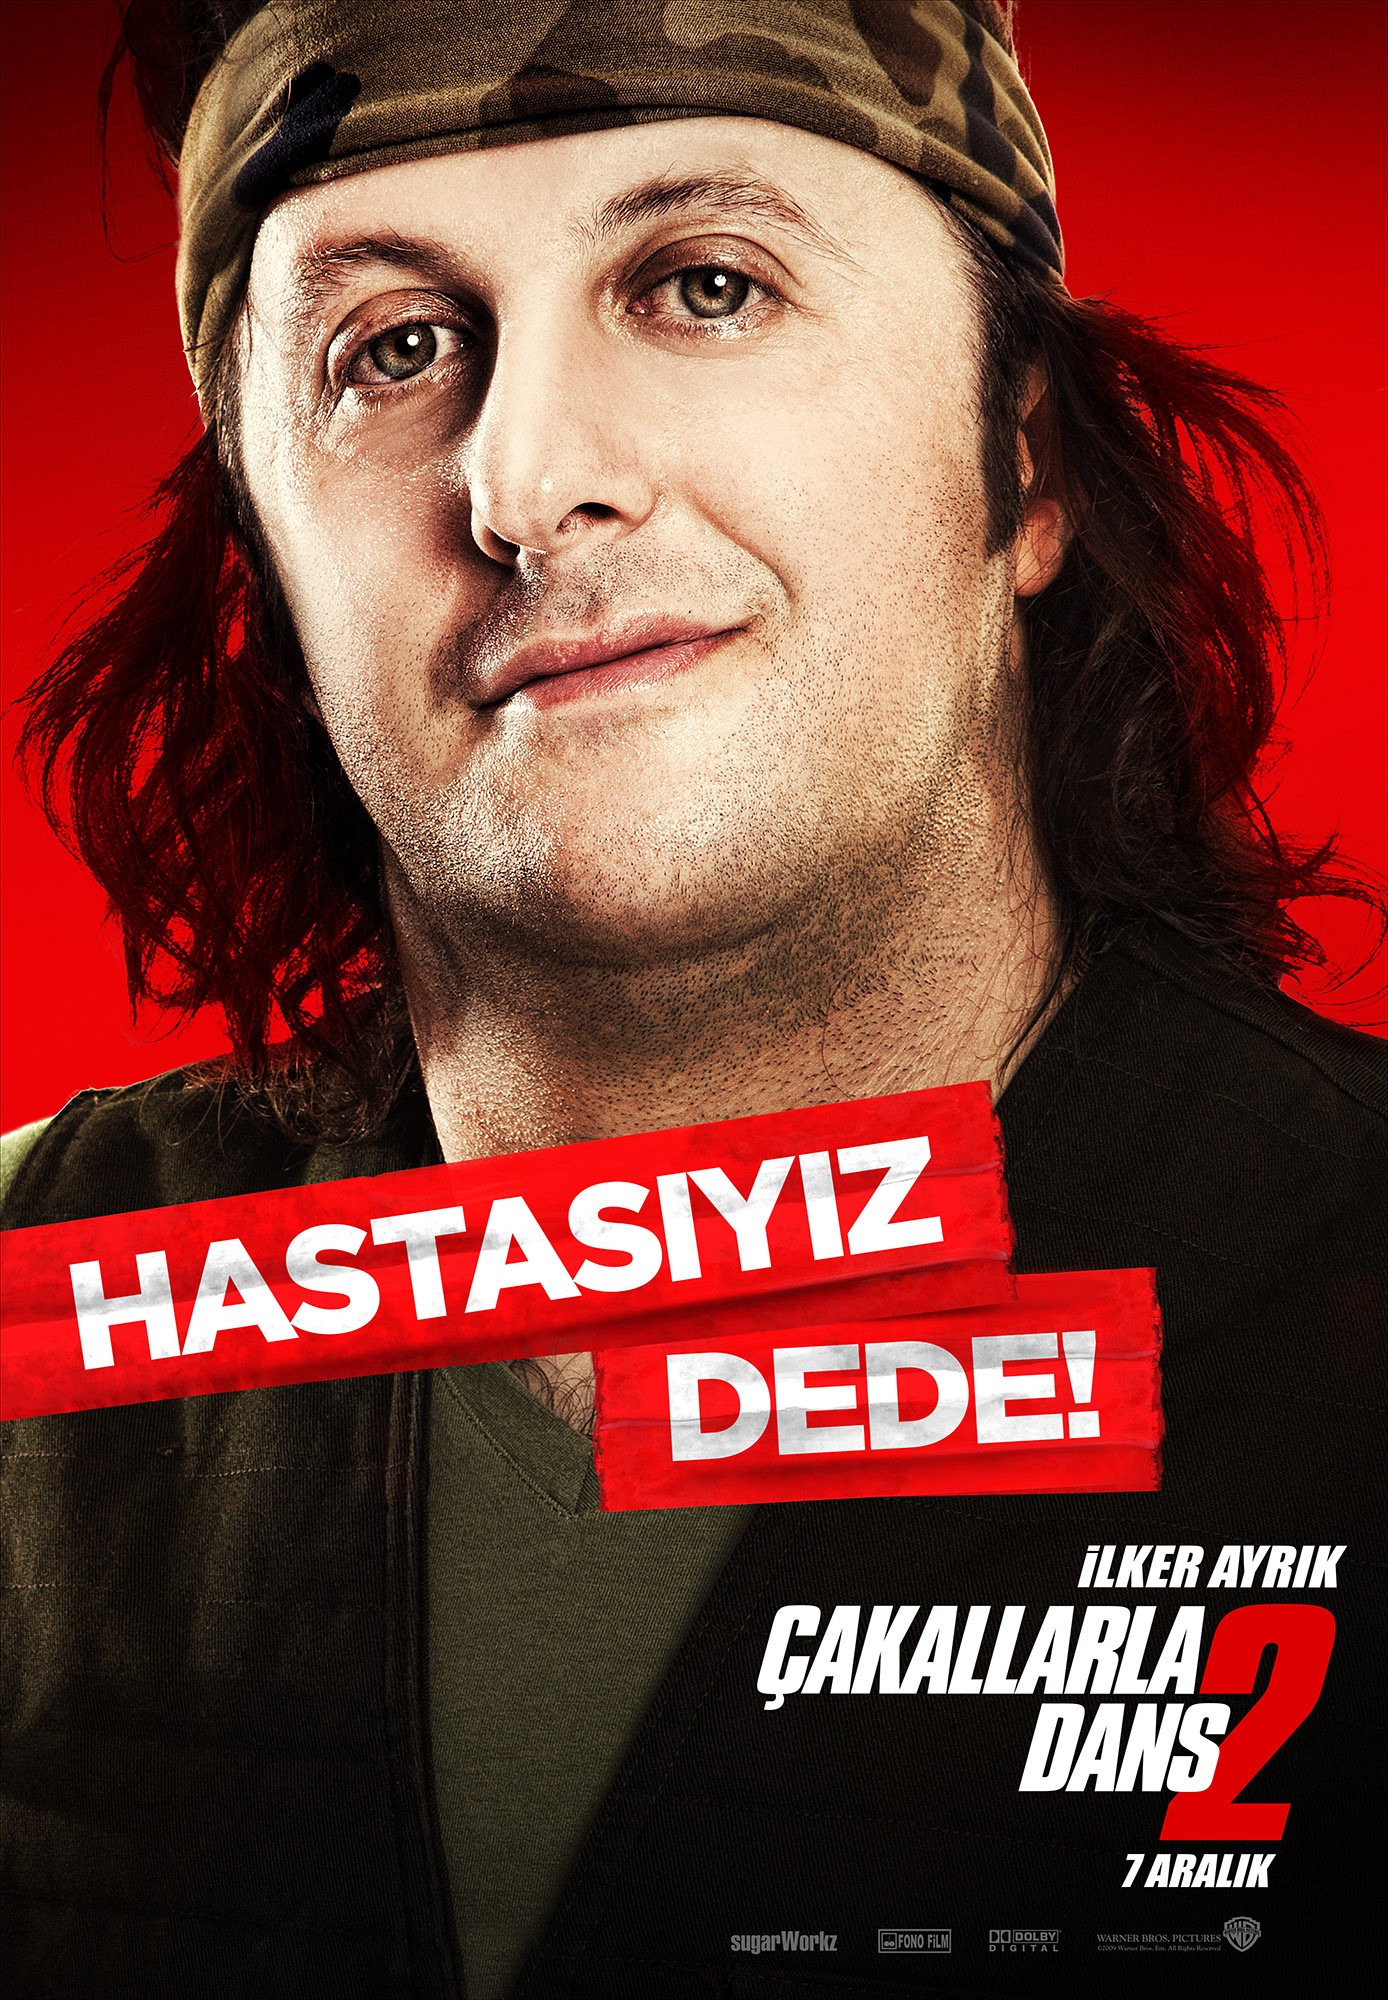 Mega Sized Movie Poster Image for Çakallarla dans 2 (#5 of 9)